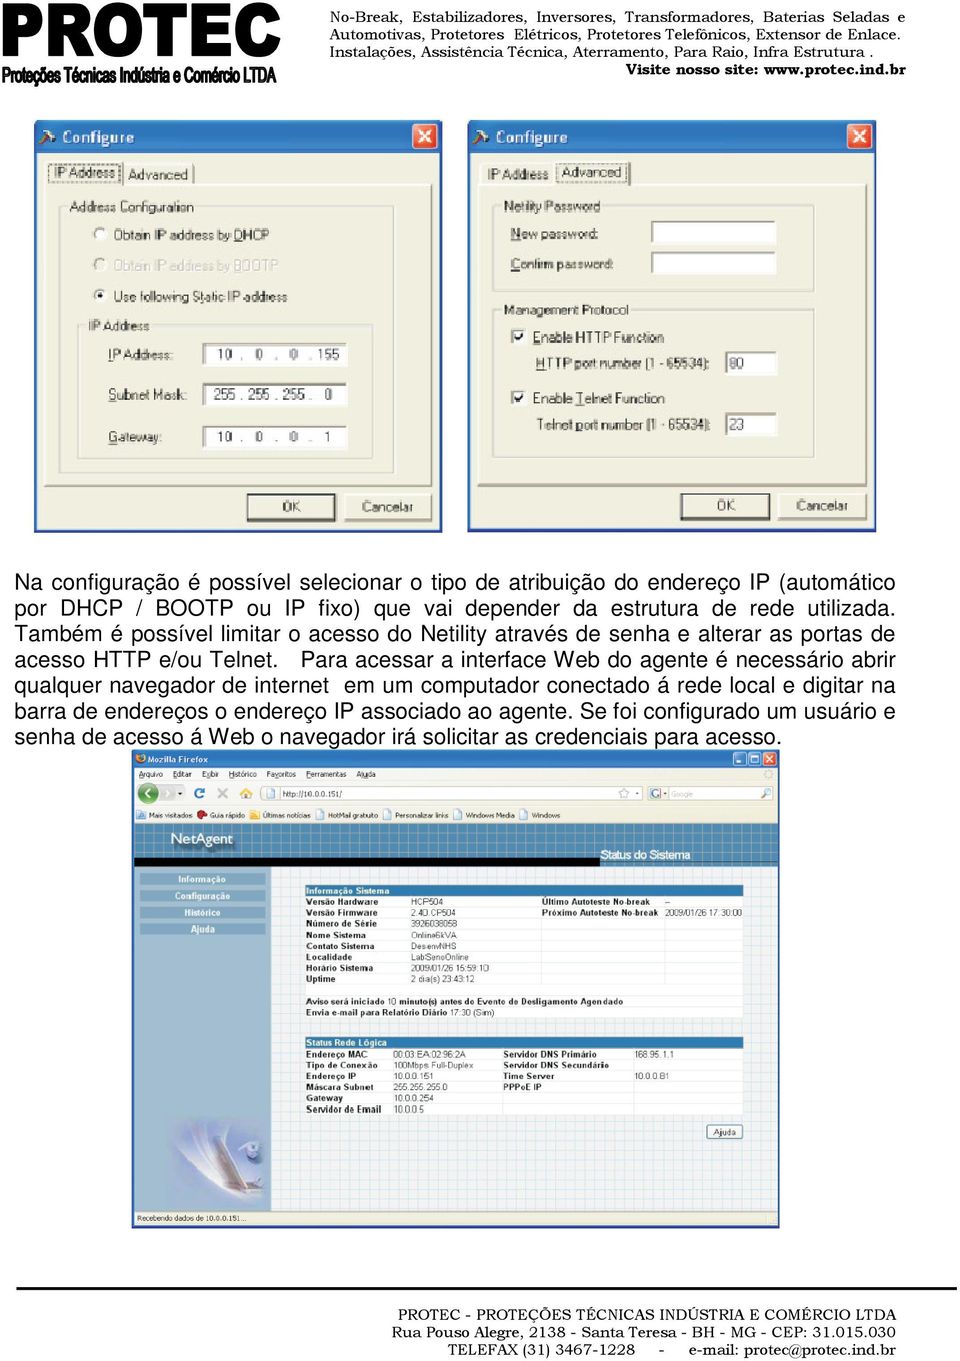 Para acessar a interface Web do agente é necessário abrir qualquer navegador de internet em um computador conectado á rede local e digitar na